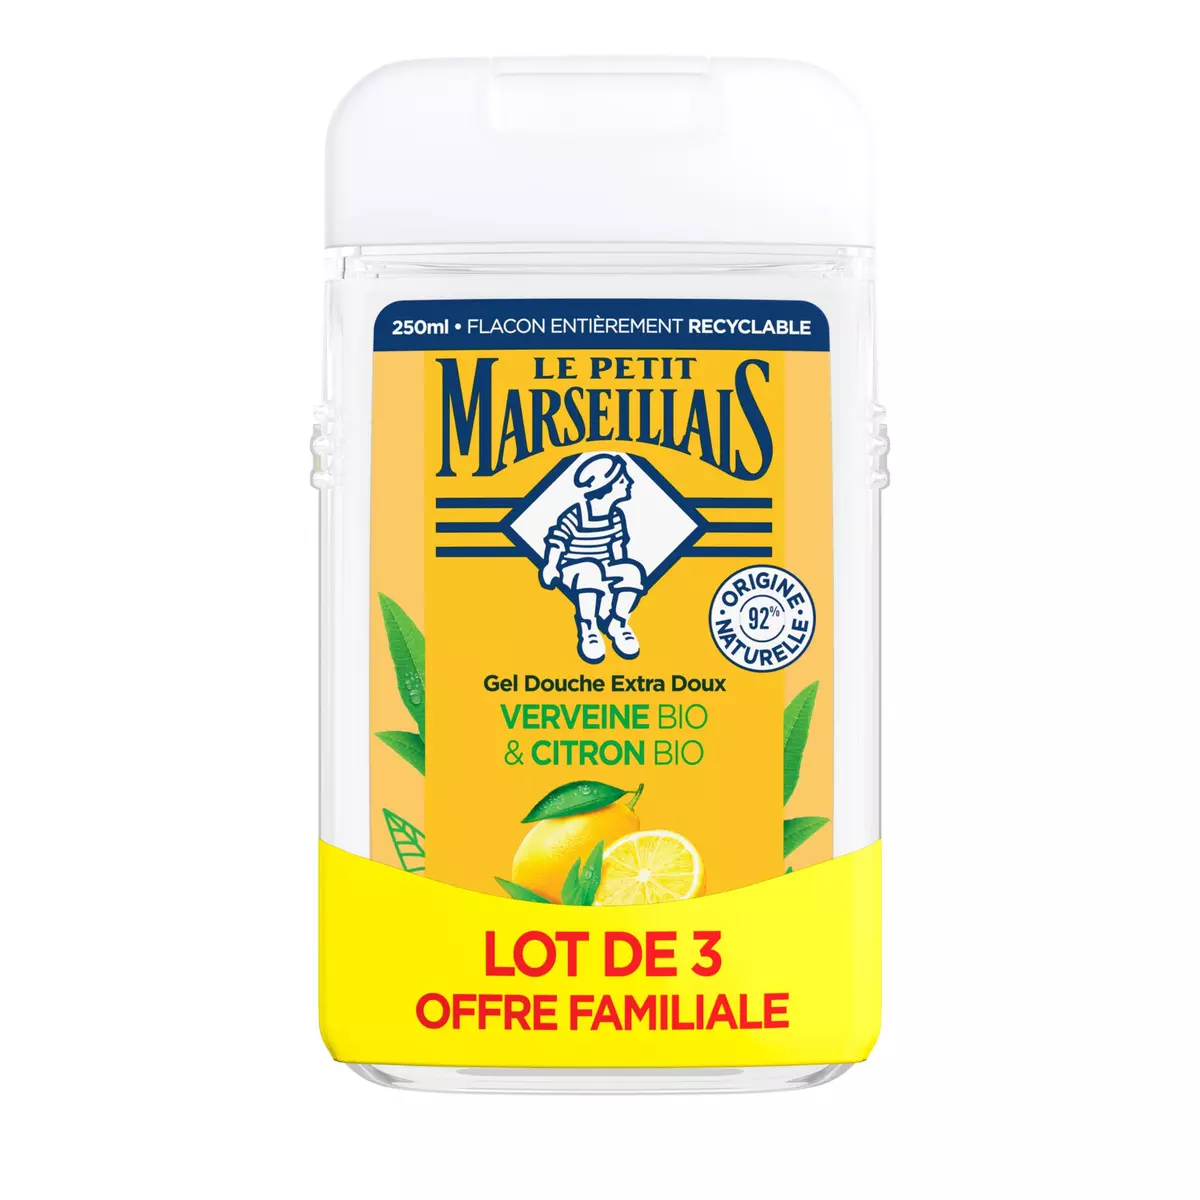 LE PETIT MARSEILLAIS Gel douche extra doux verveine et citron bio 3x250ml